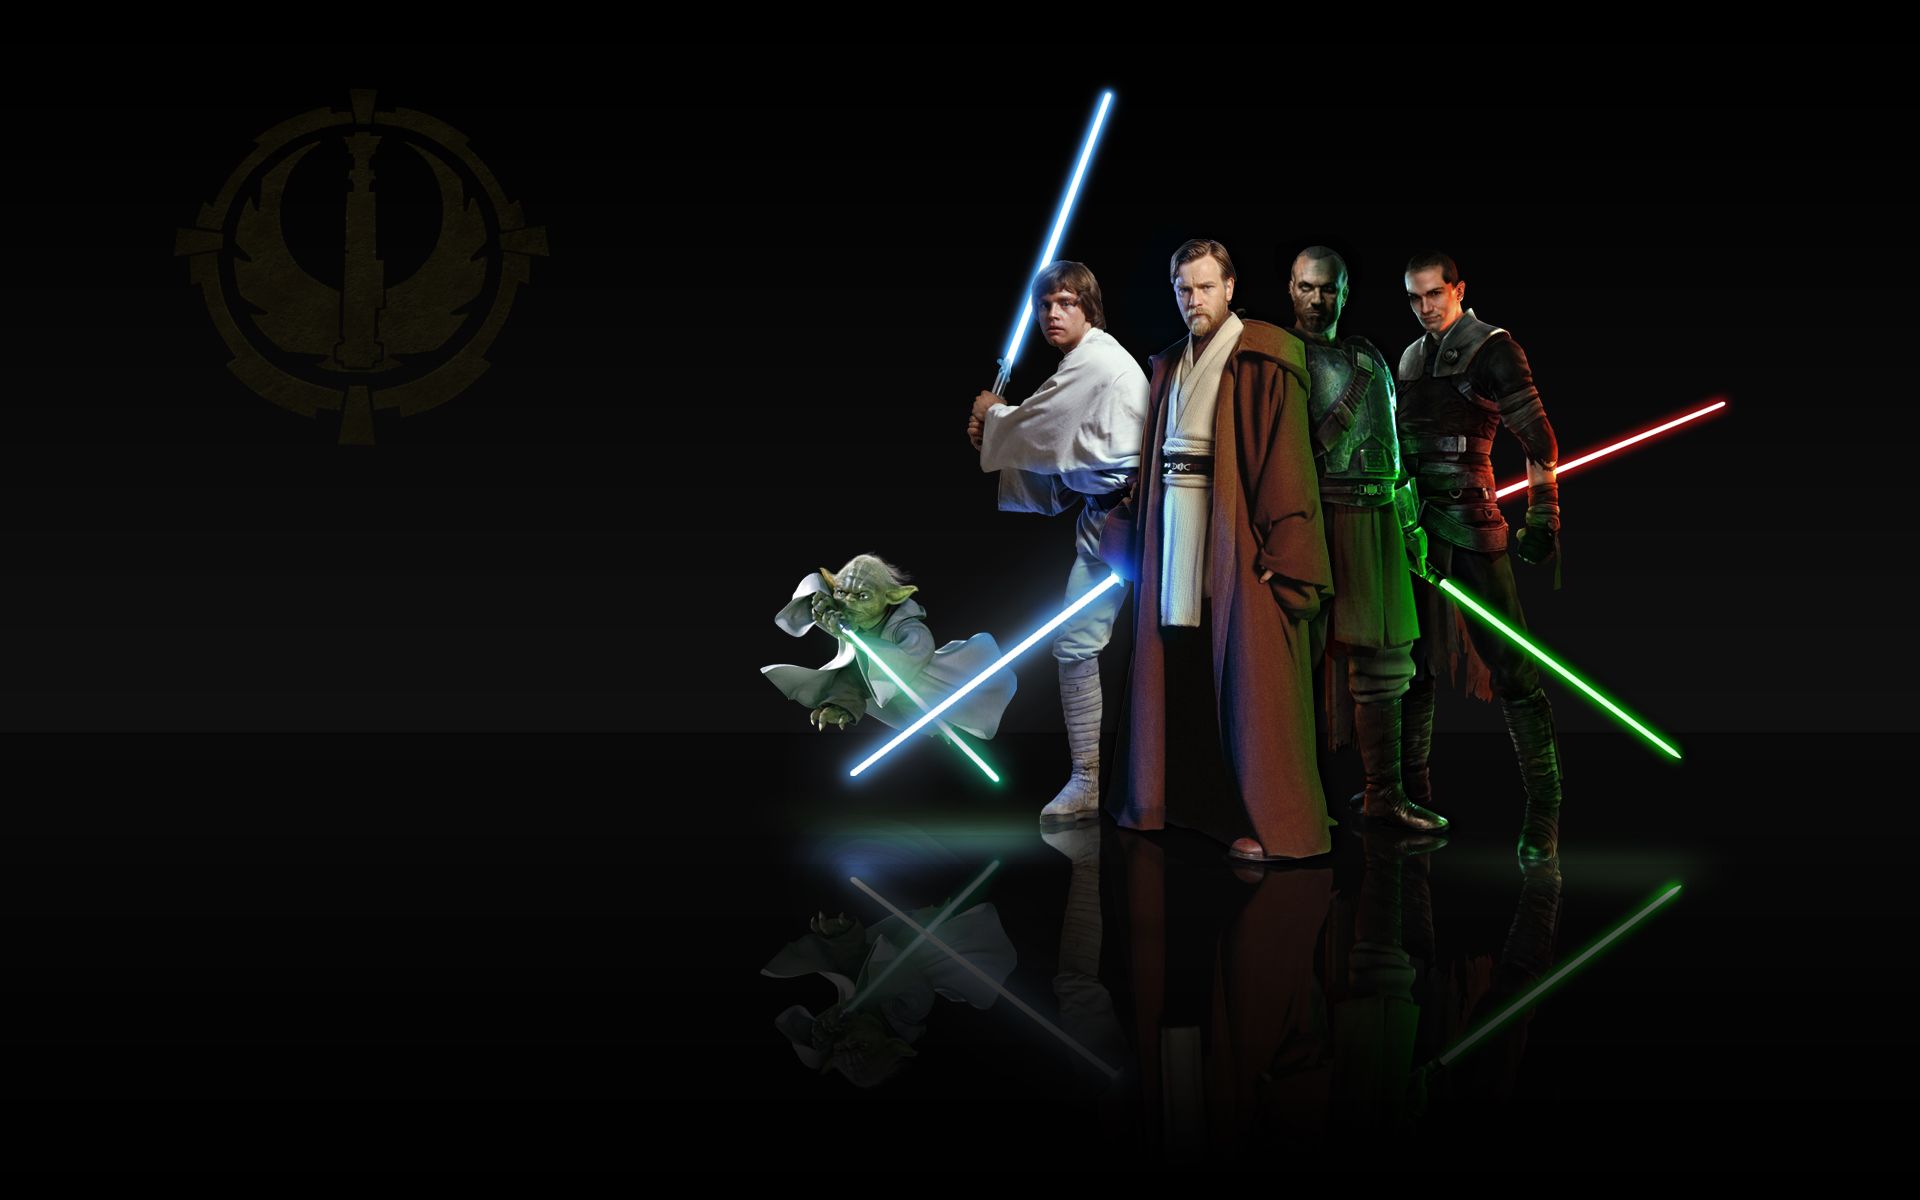 Jedi Knight Obi-Wan Kenobi, Luke Skywalker and Master Yoda ...